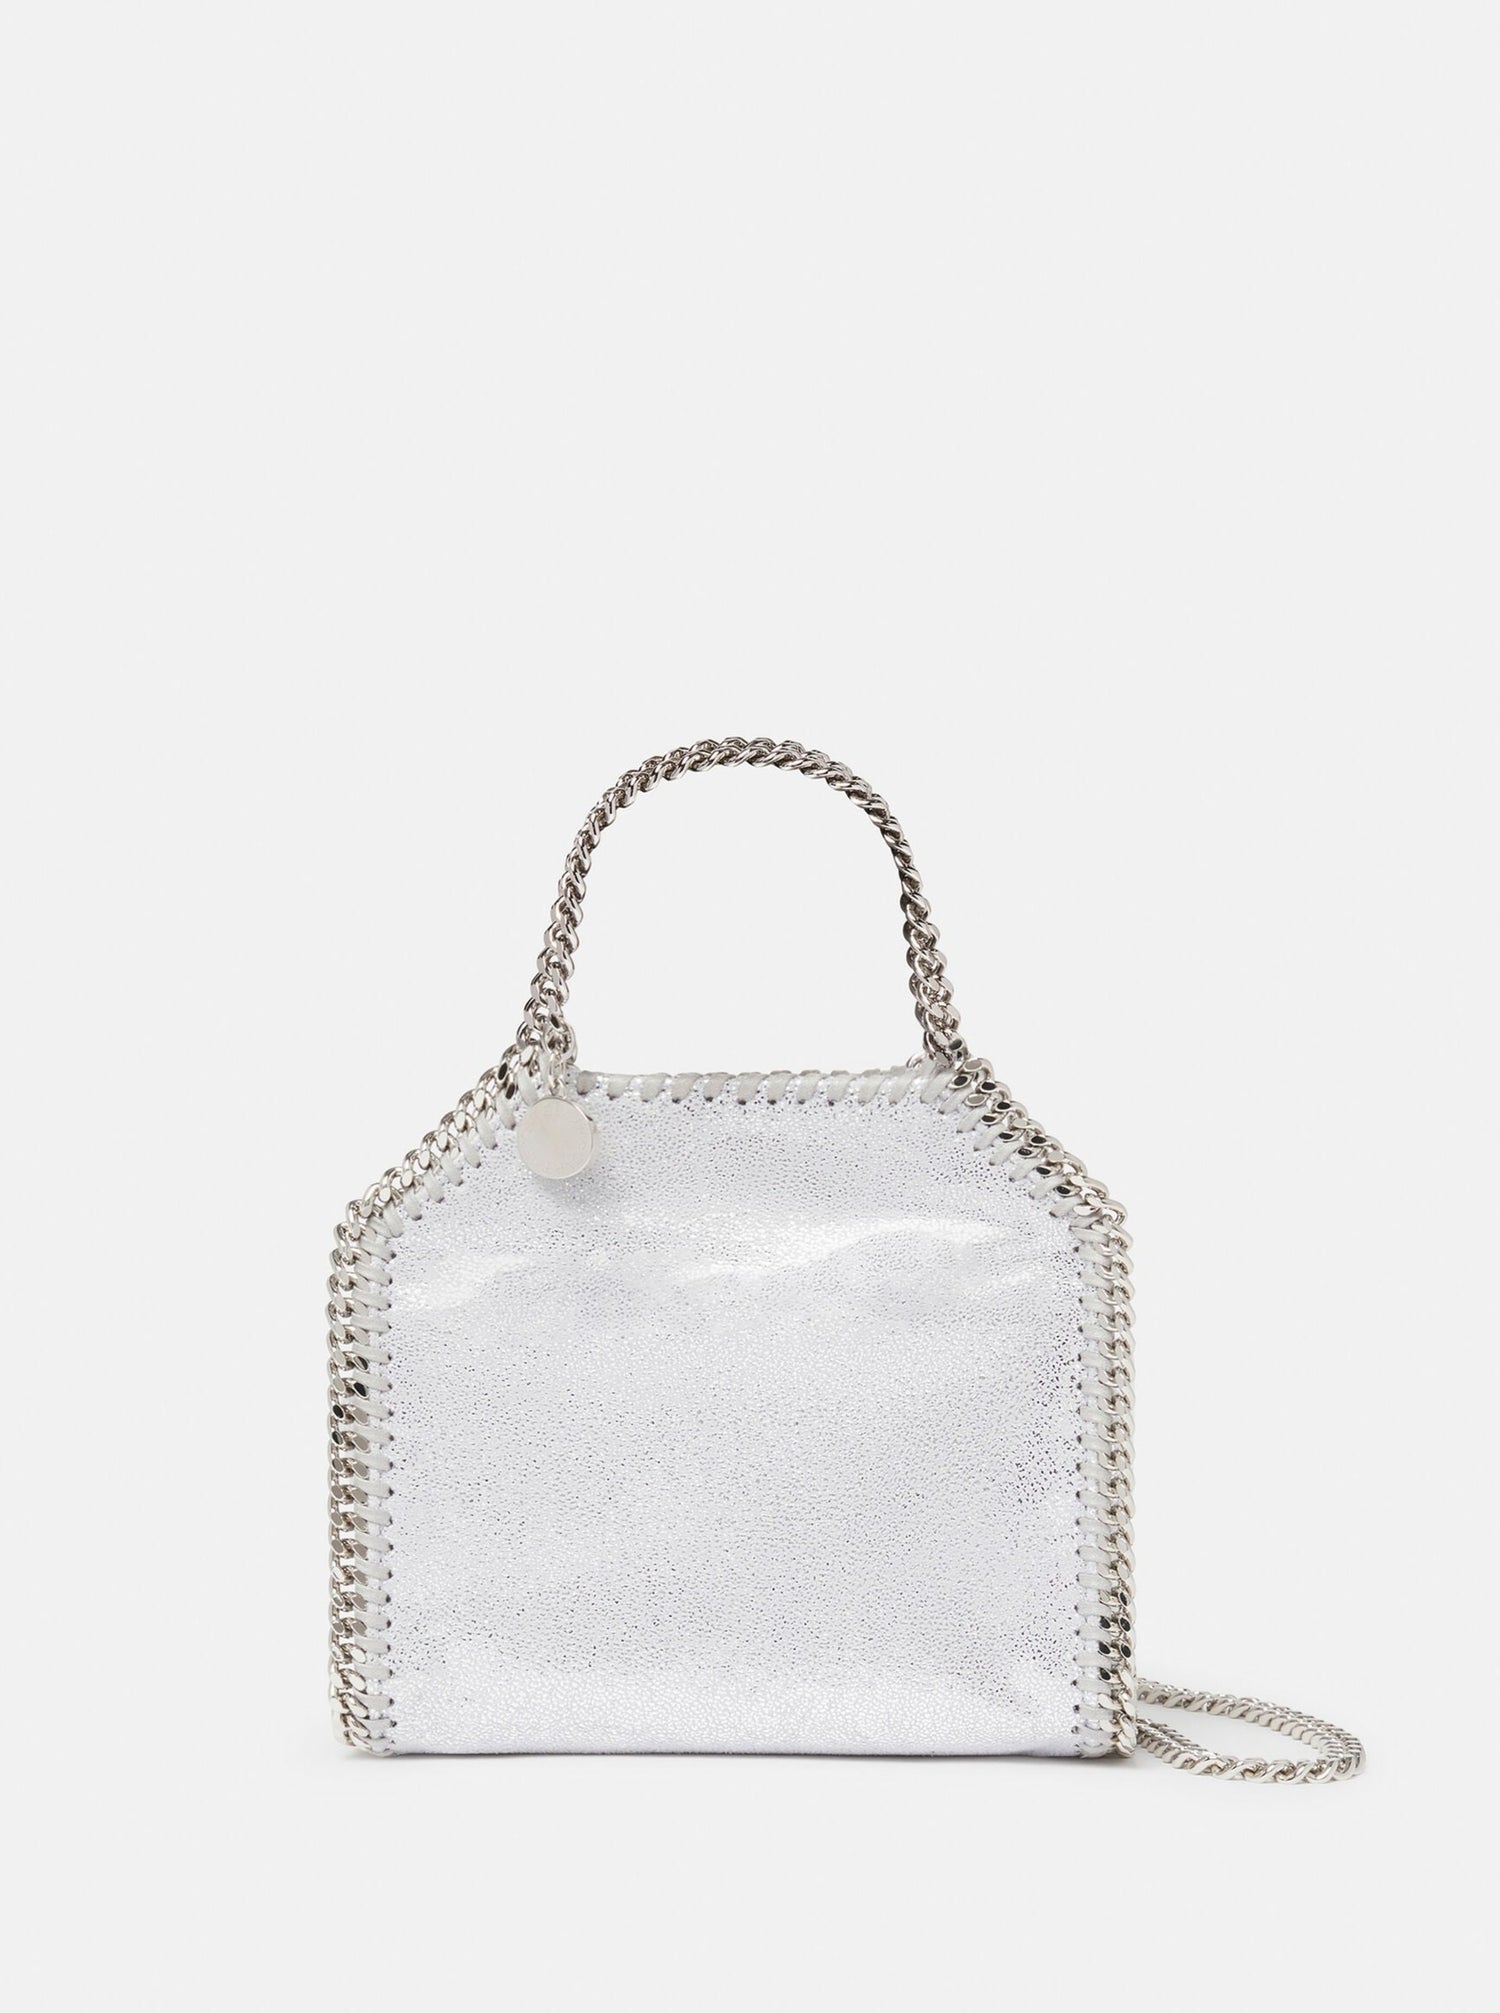 Falabella tiny tote bag, silver w. silver chain